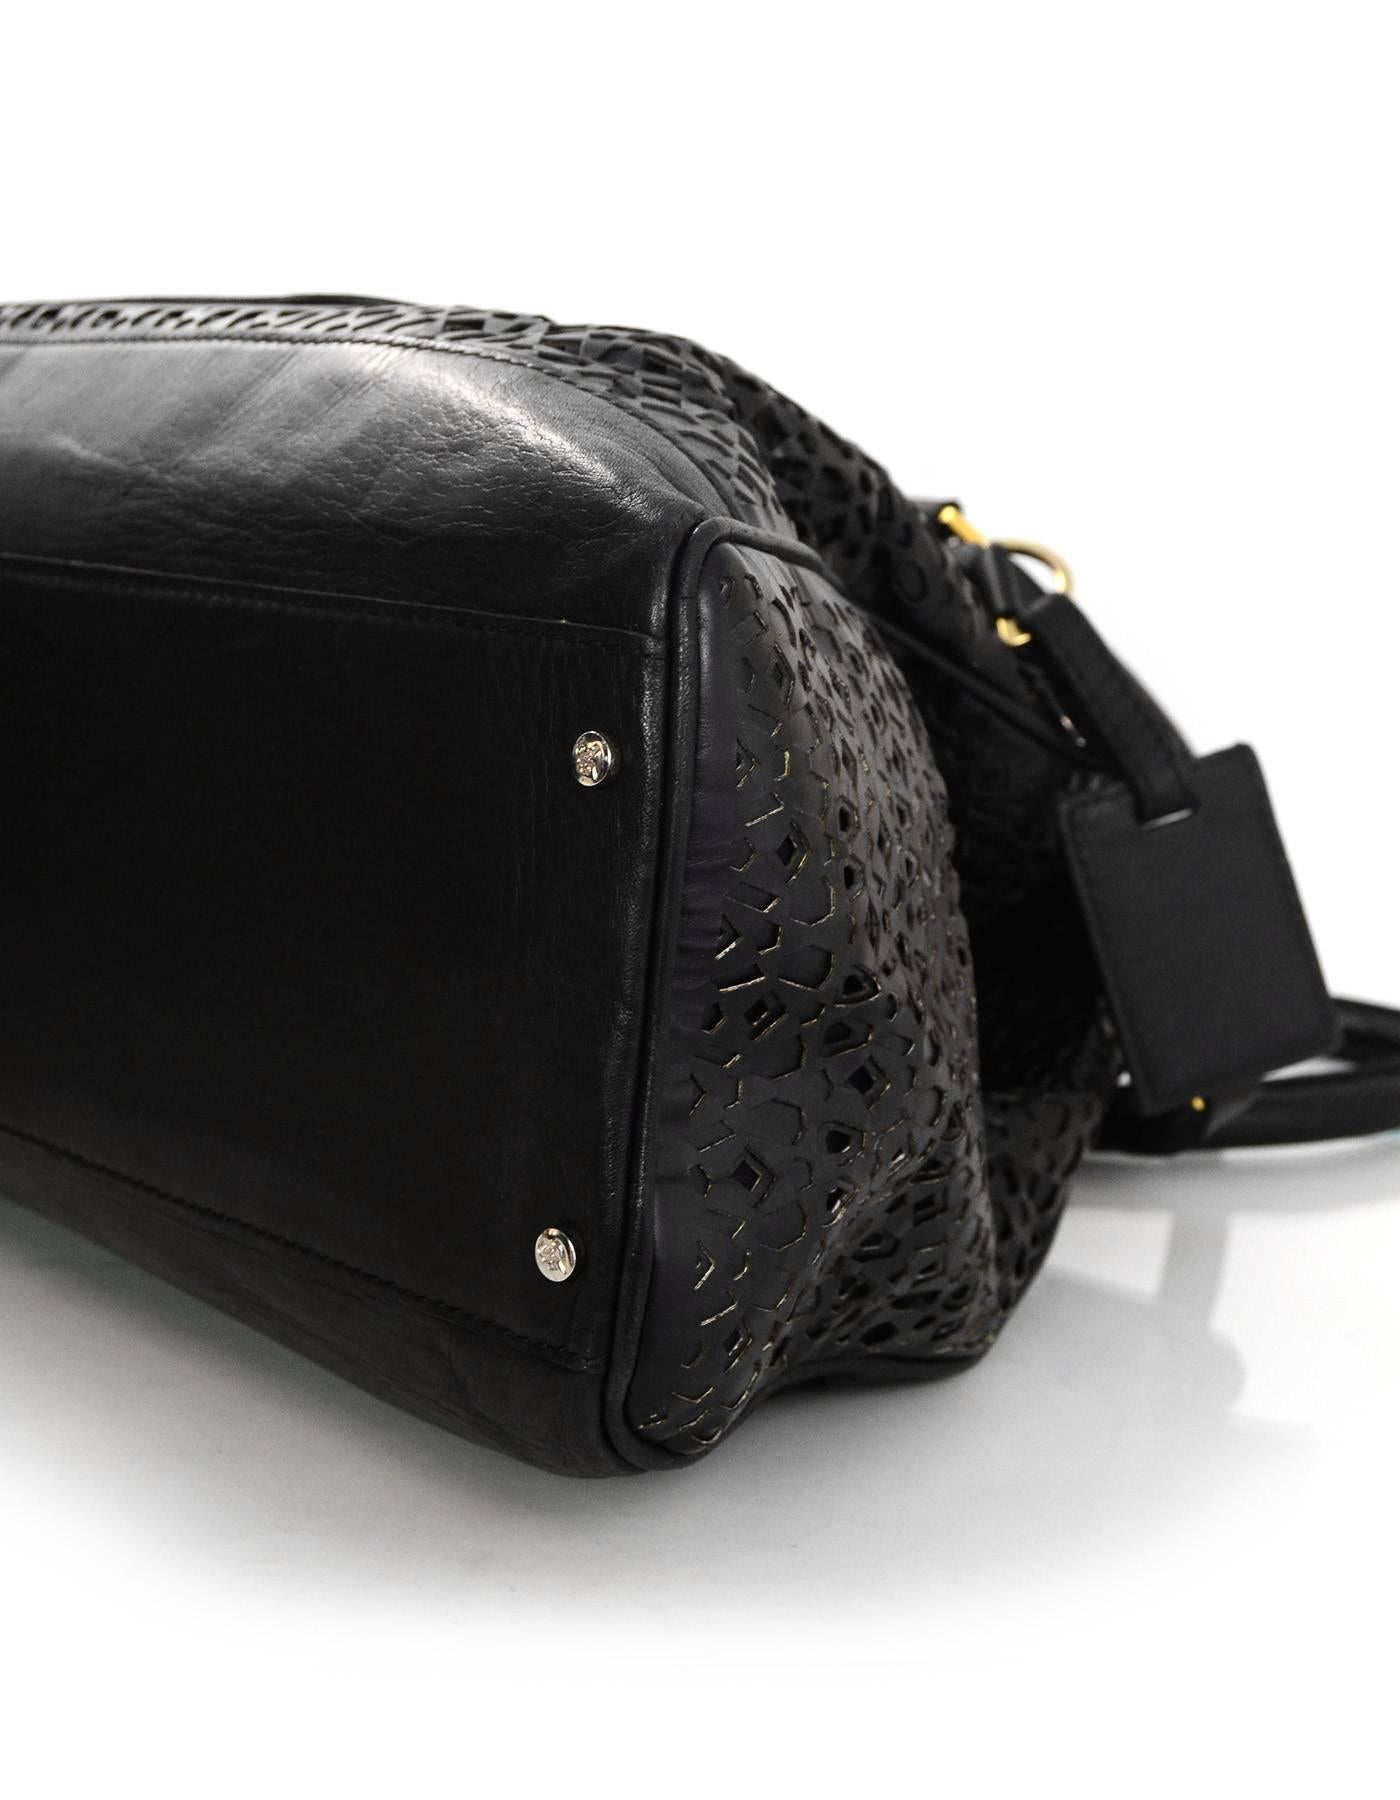 laser cut leather purse